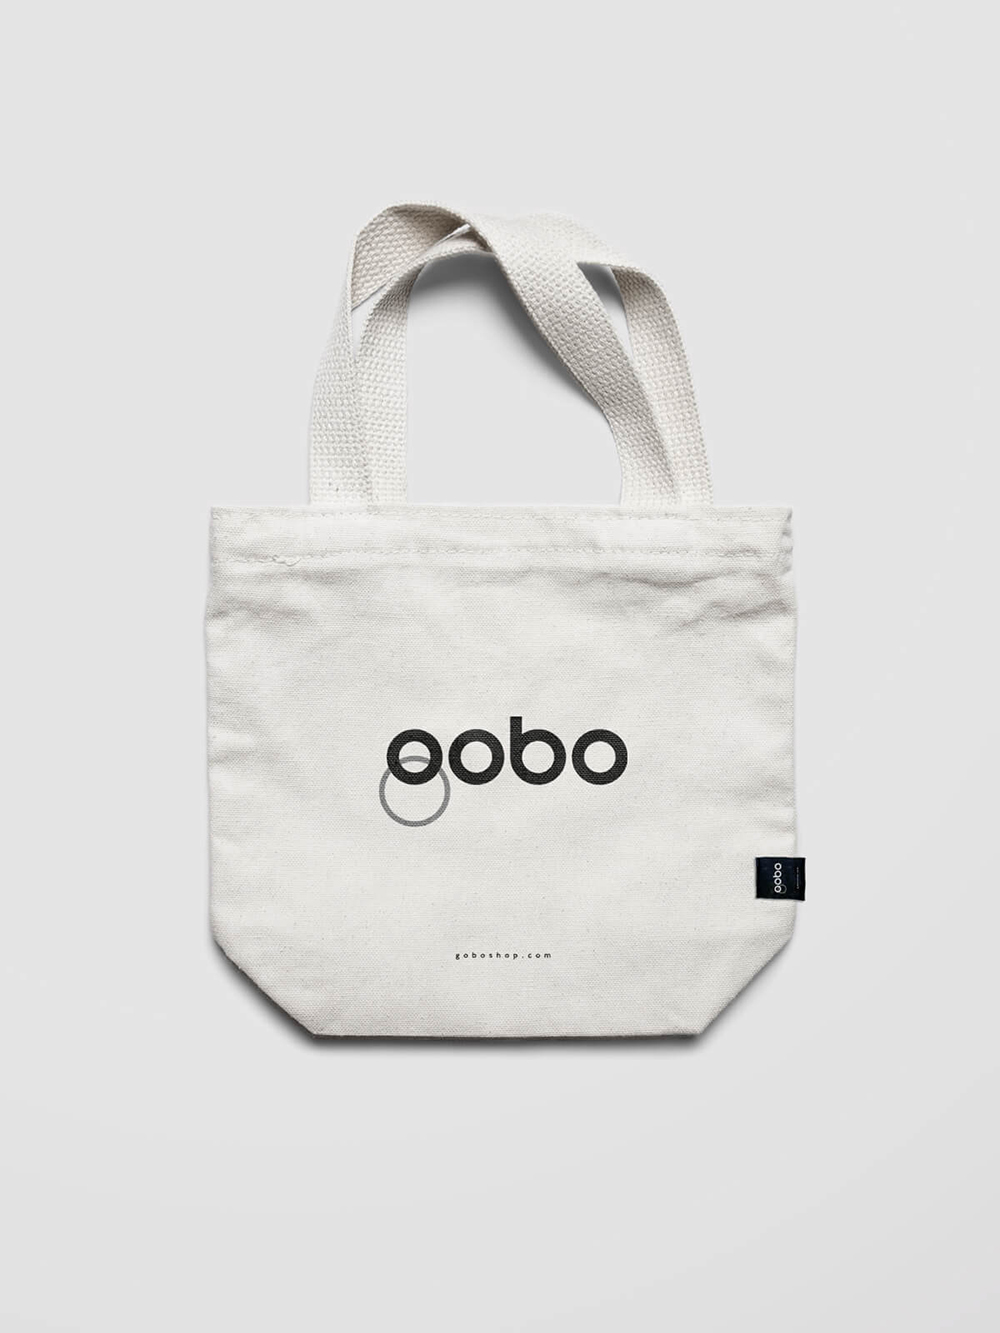 Diseño y desarrollo de identidad visual corporativa para Gobo. Tote-bag.